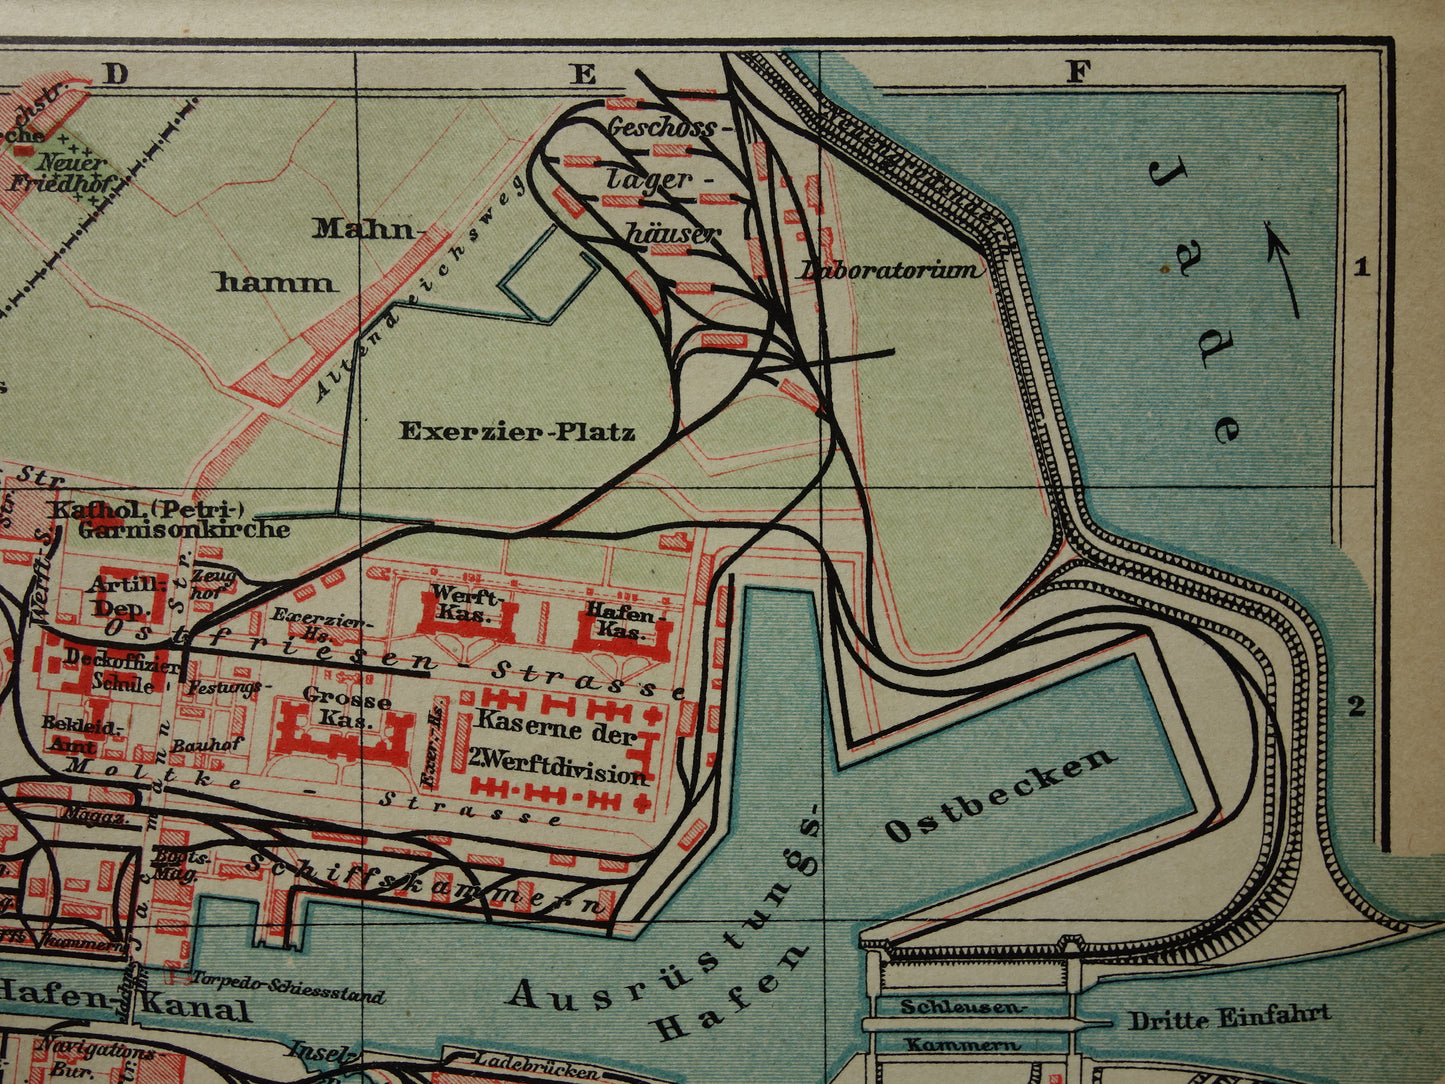 WILHELMSHAVEN antieke kaart kleine originele oude plattegrond Wilhelmshaven Duitsland vintage kaarten met jaartal